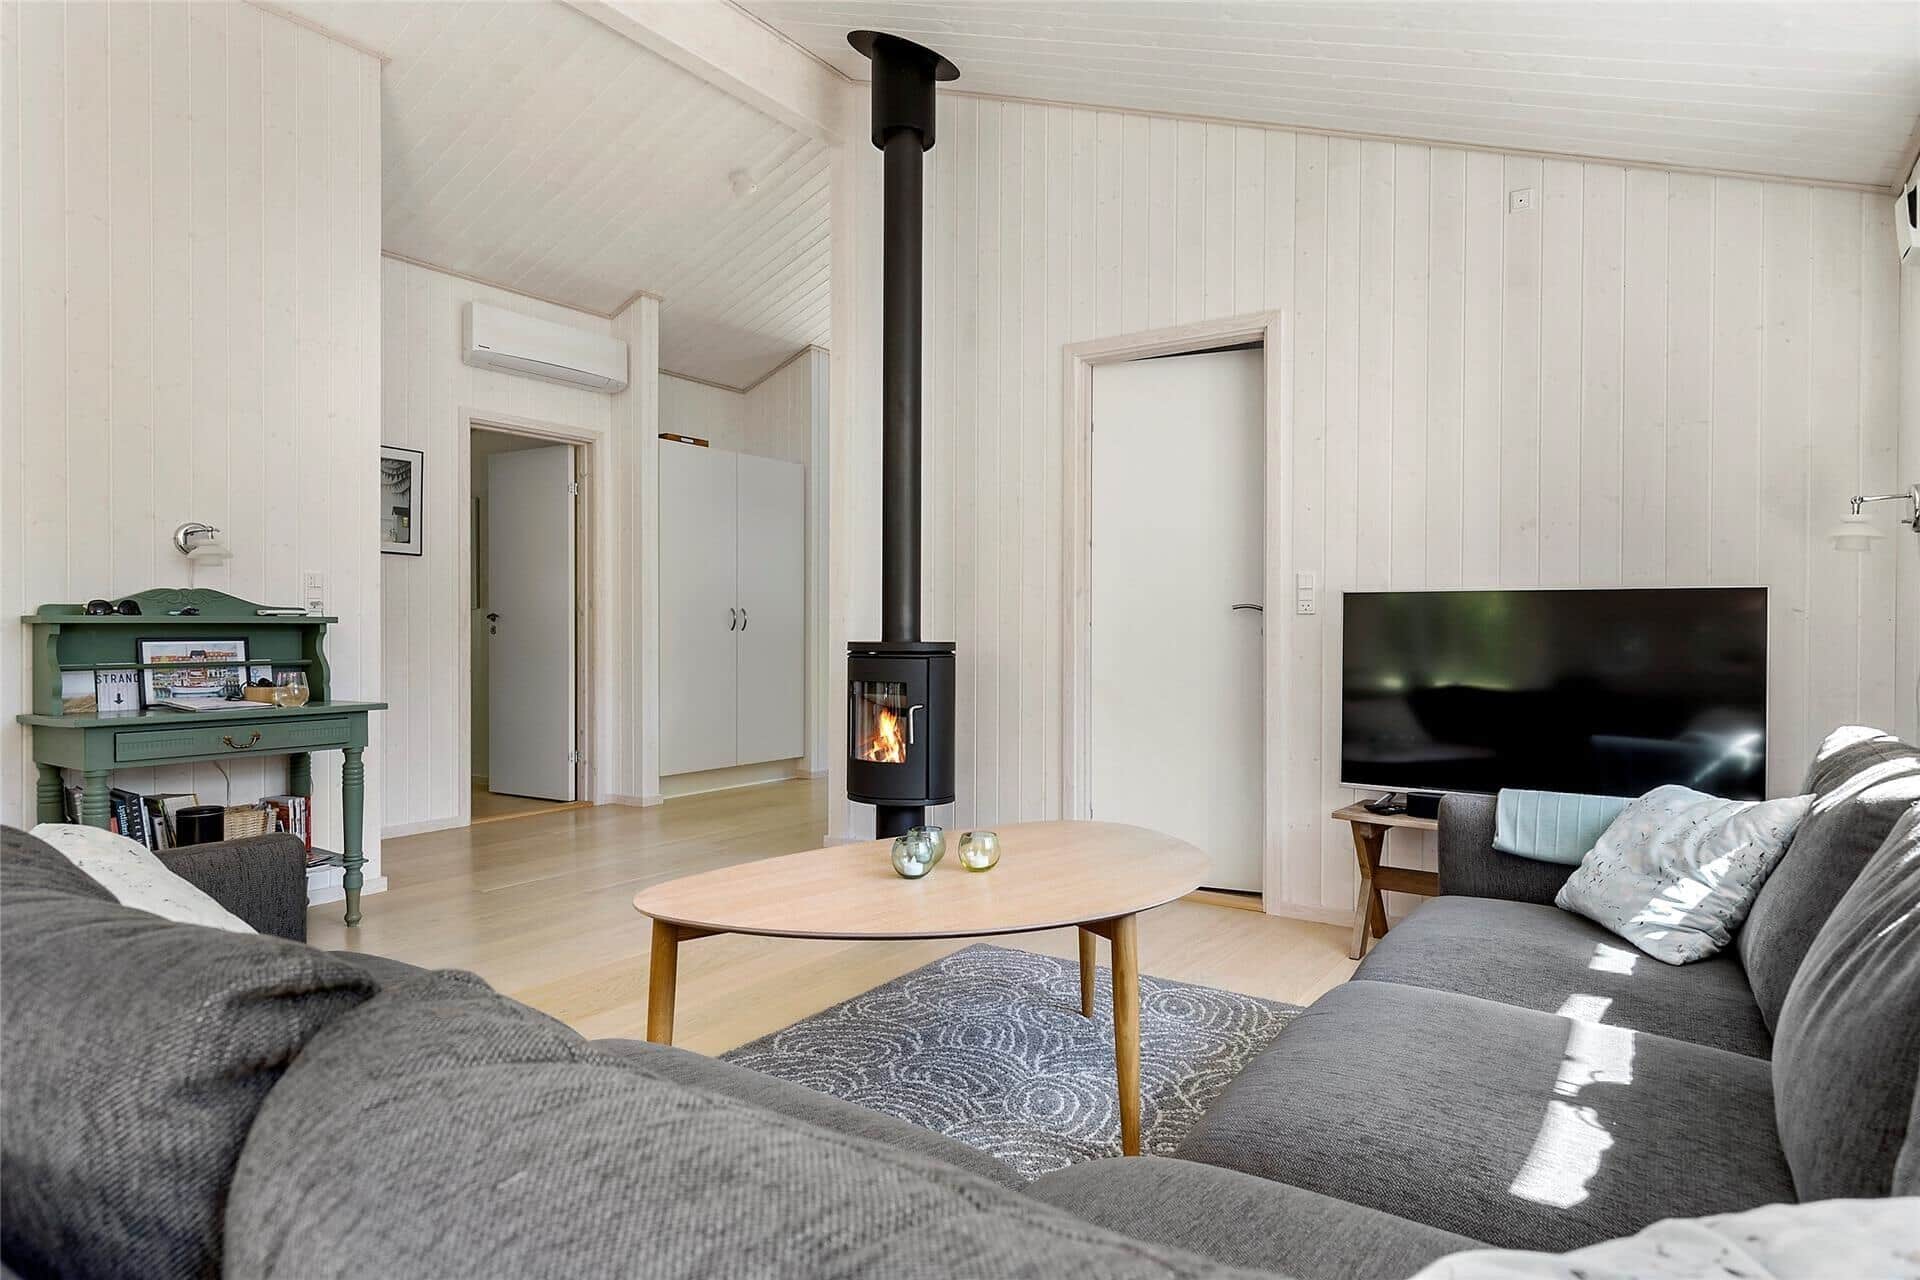 Livingroom 1 Image 1-17 Holiday-home 10032, Soldalen 26, DK - 4500 Nykøbing Sj